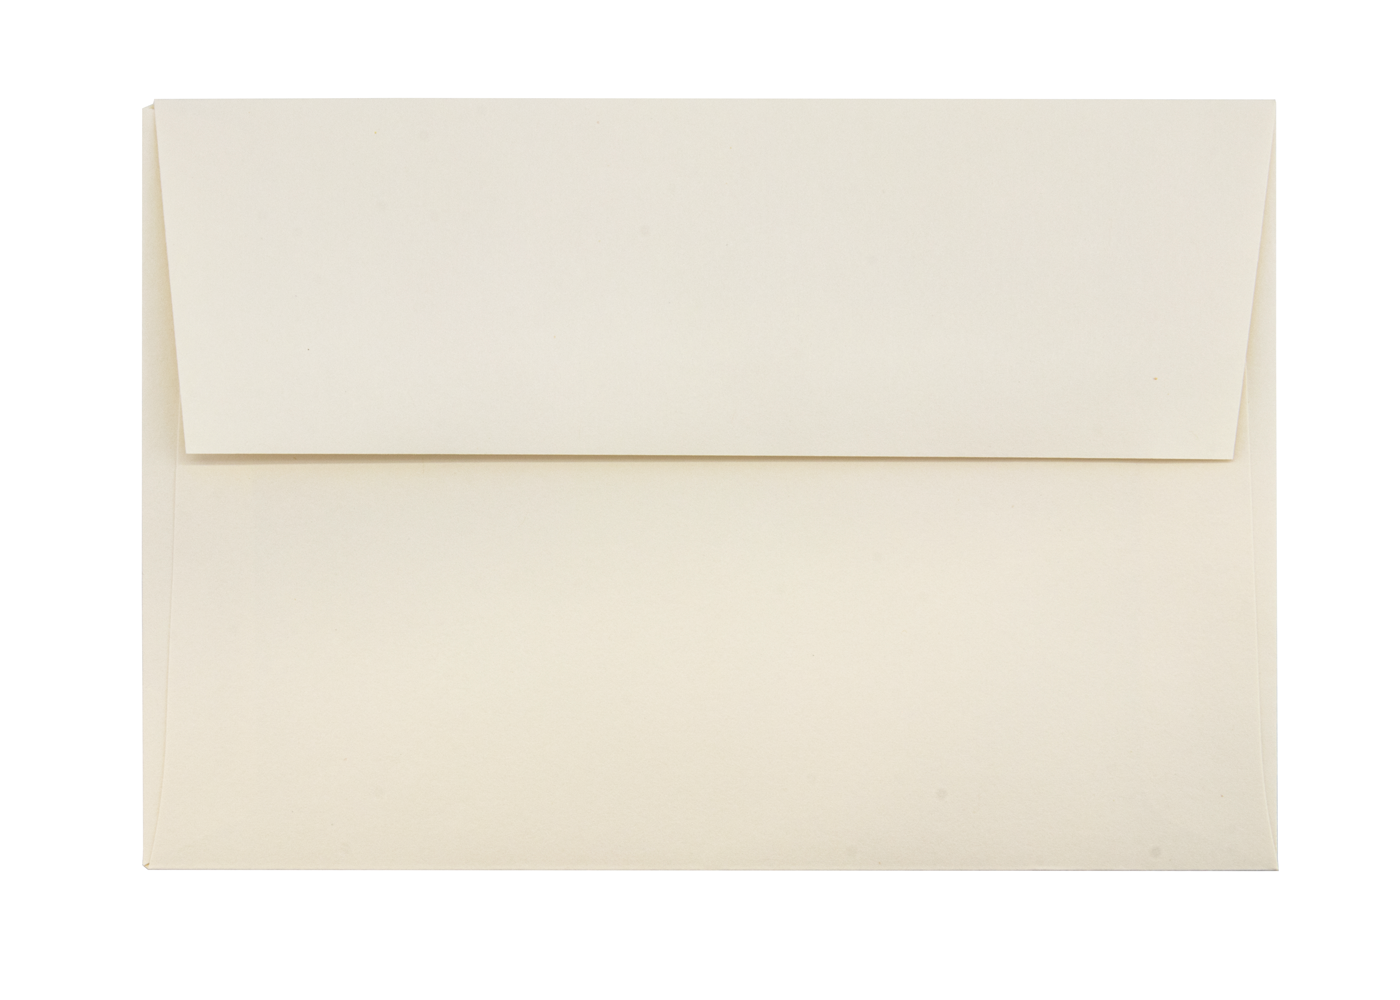 San Lorenzo 4.25" x 6.25" Envelopes- Natural White